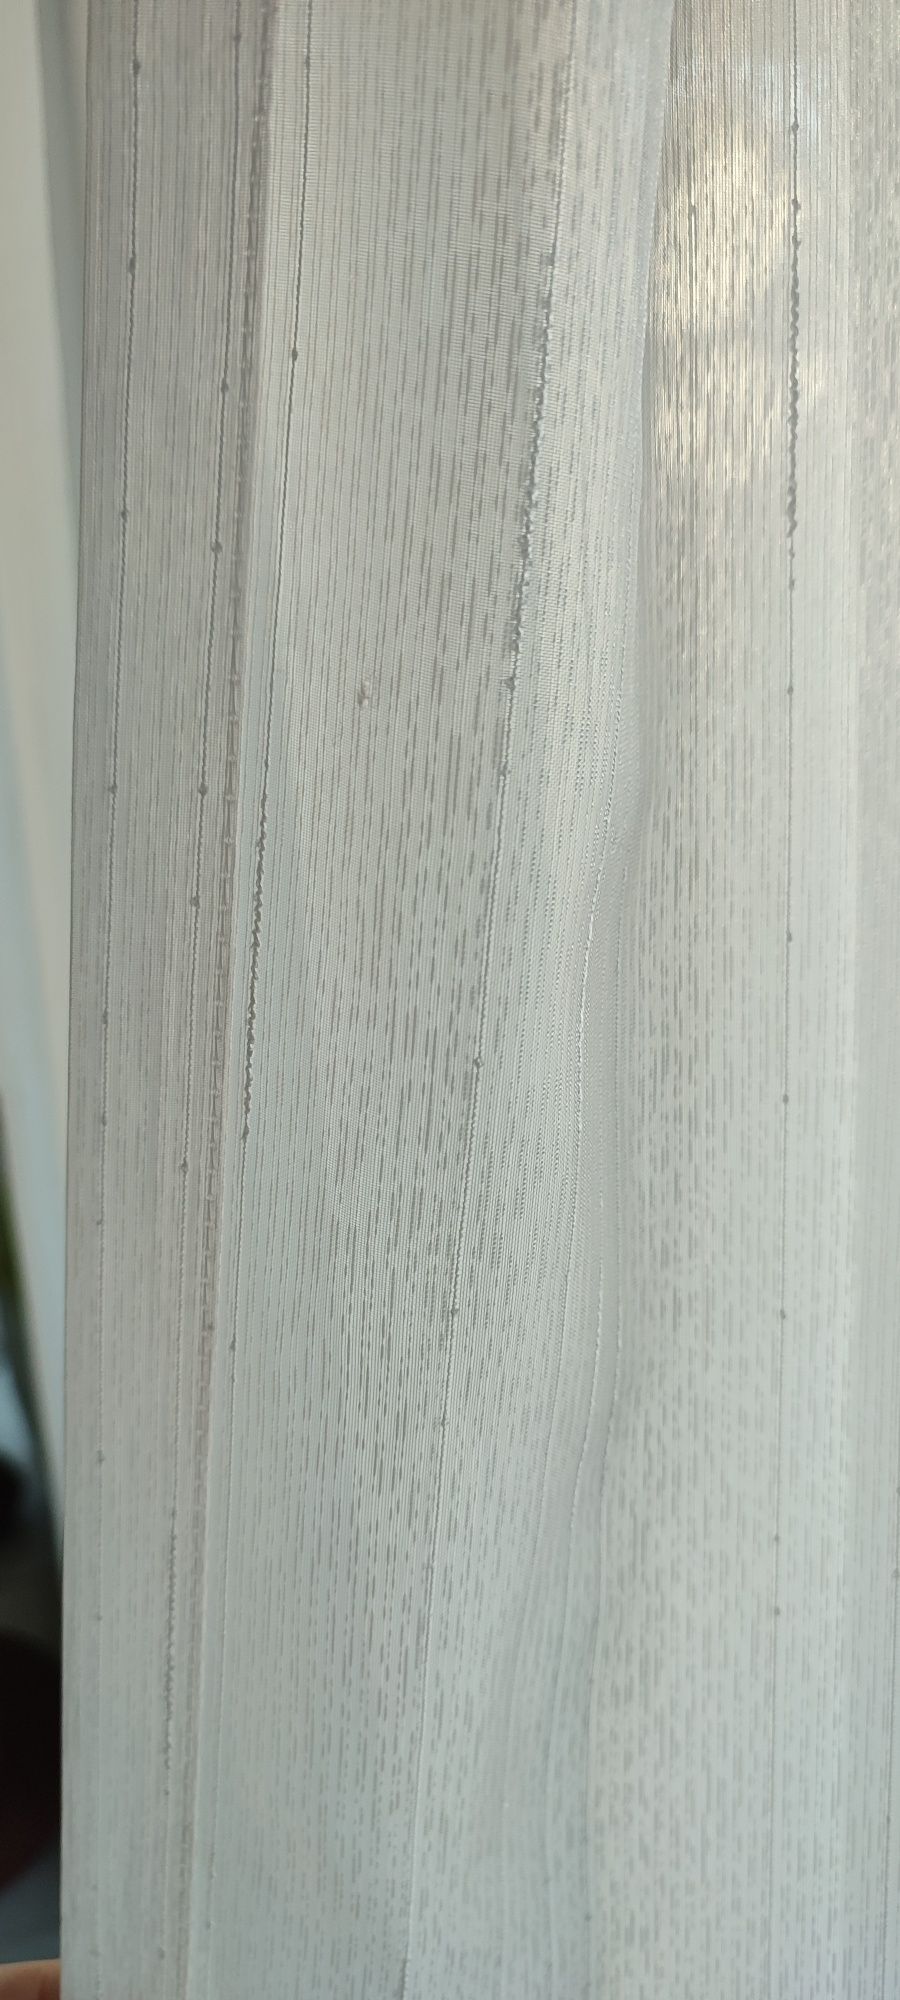 Firanki białe gipiura koronka 110x195 cm komplet 2 sztuki do kolekcji